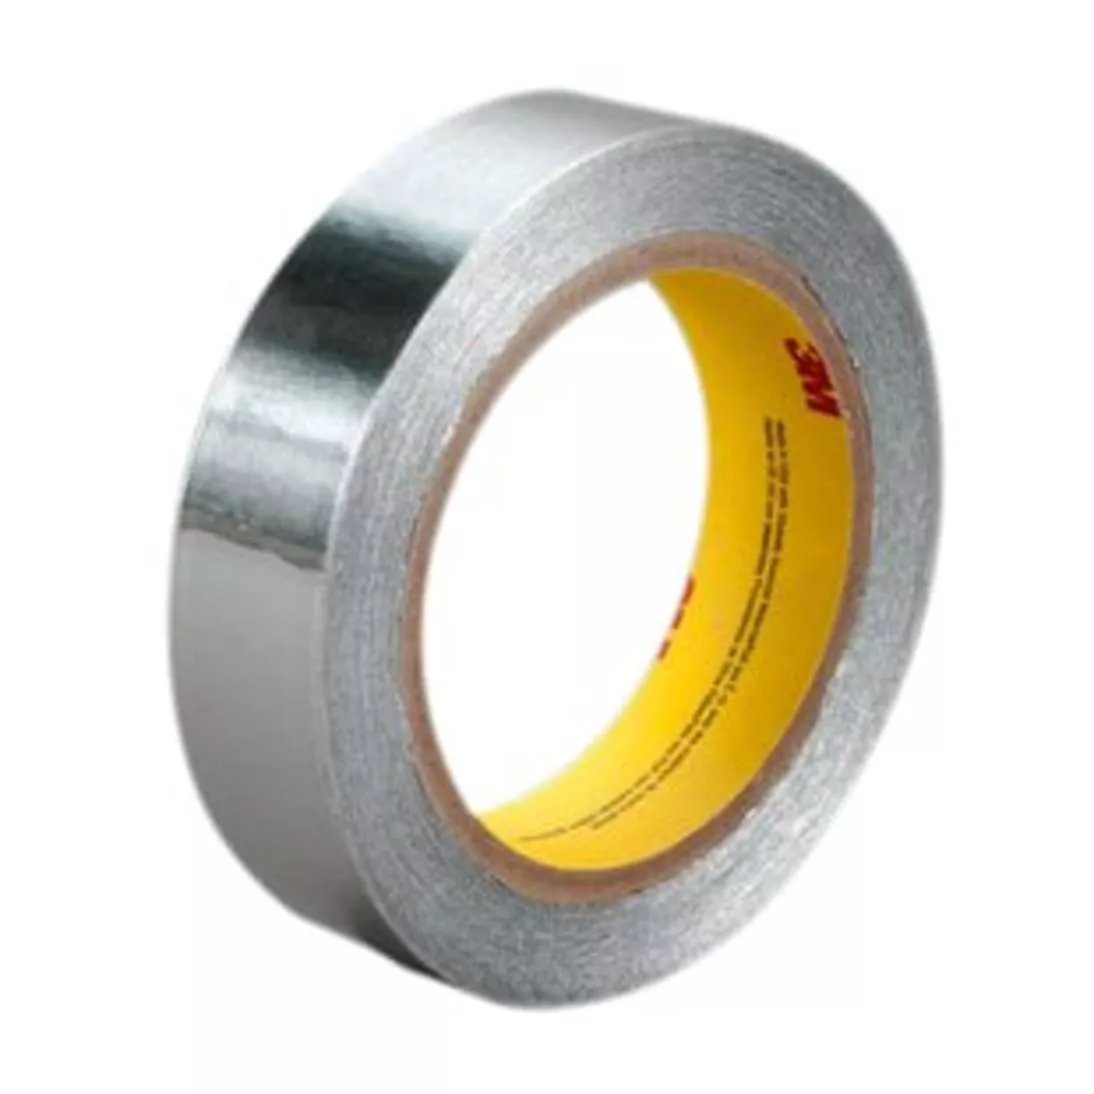 3M™ Aluminum Foil Tape 431, Silver, 2 in x 60 yd, 3.1 mil, 24 rolls per
case